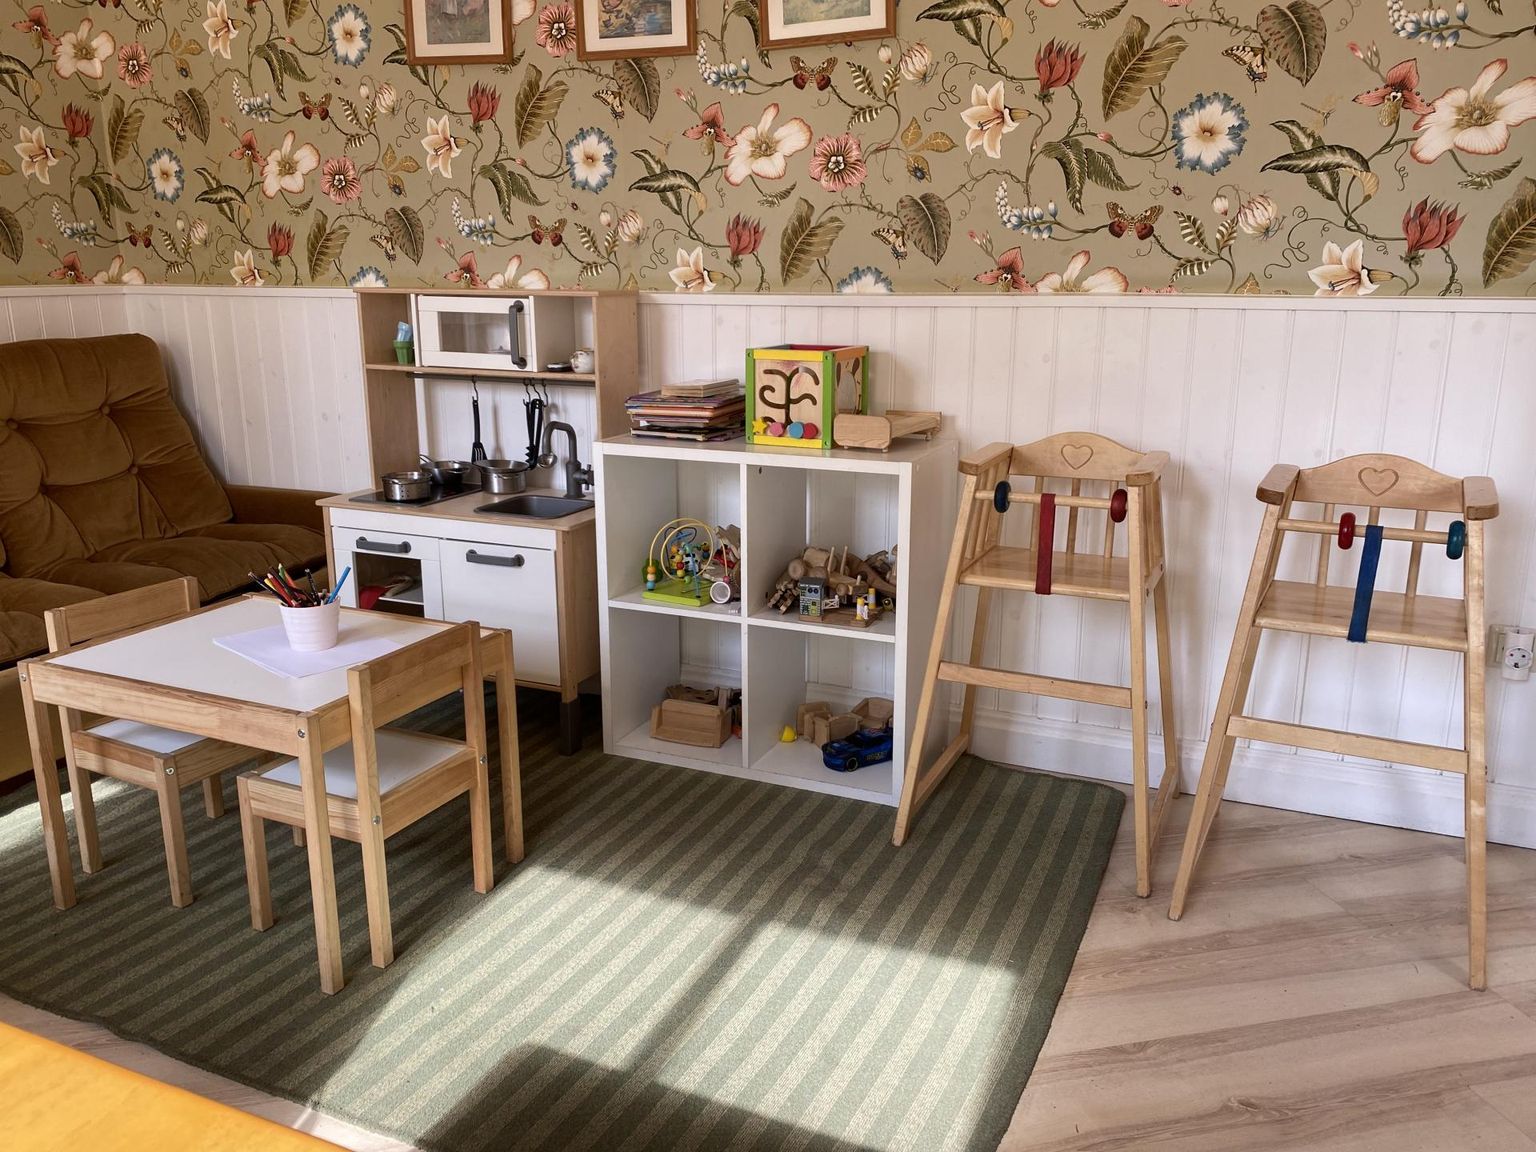 Rakvere Rohuaia kohvikus on mudilastel võimalik joonistada, kokata ja mängida klotsidega.